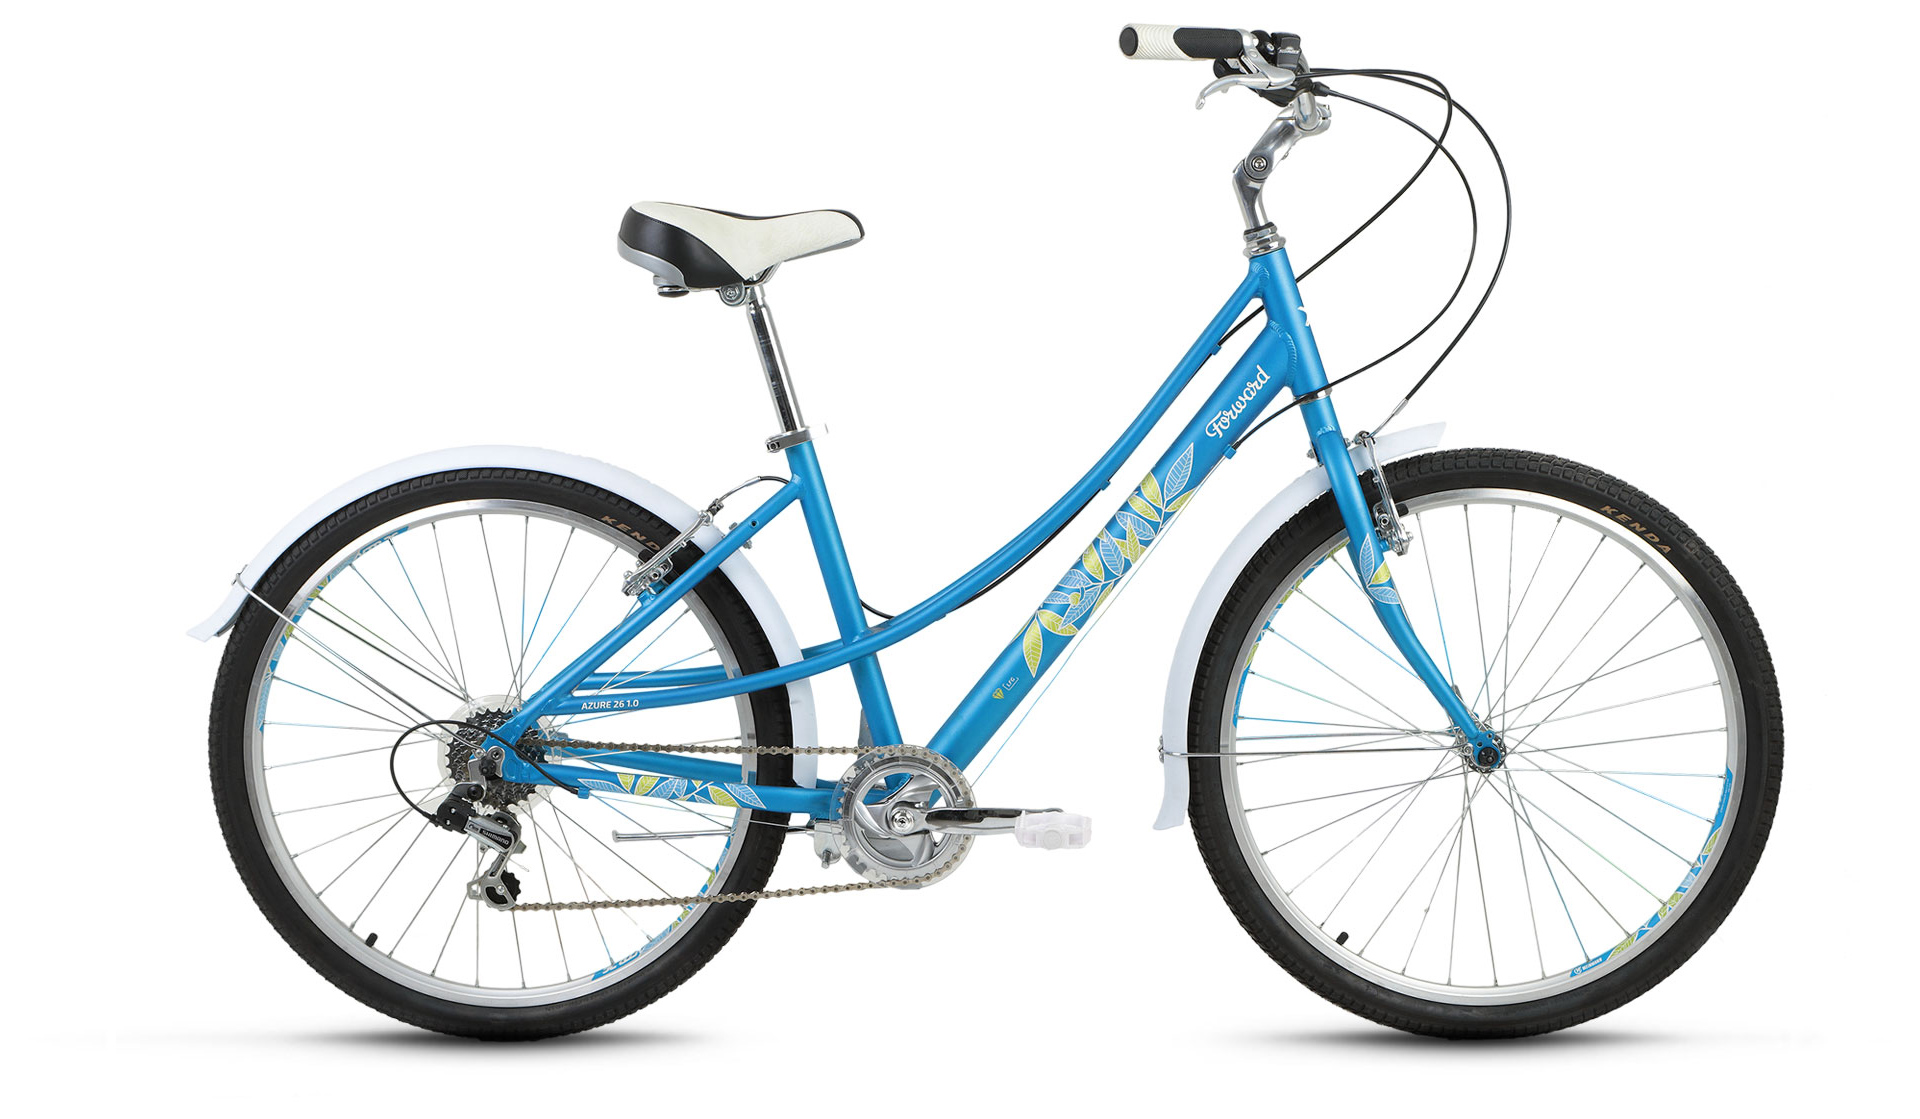  Отзывы о Женском велосипеде Forward Azure 26 1.0 2019